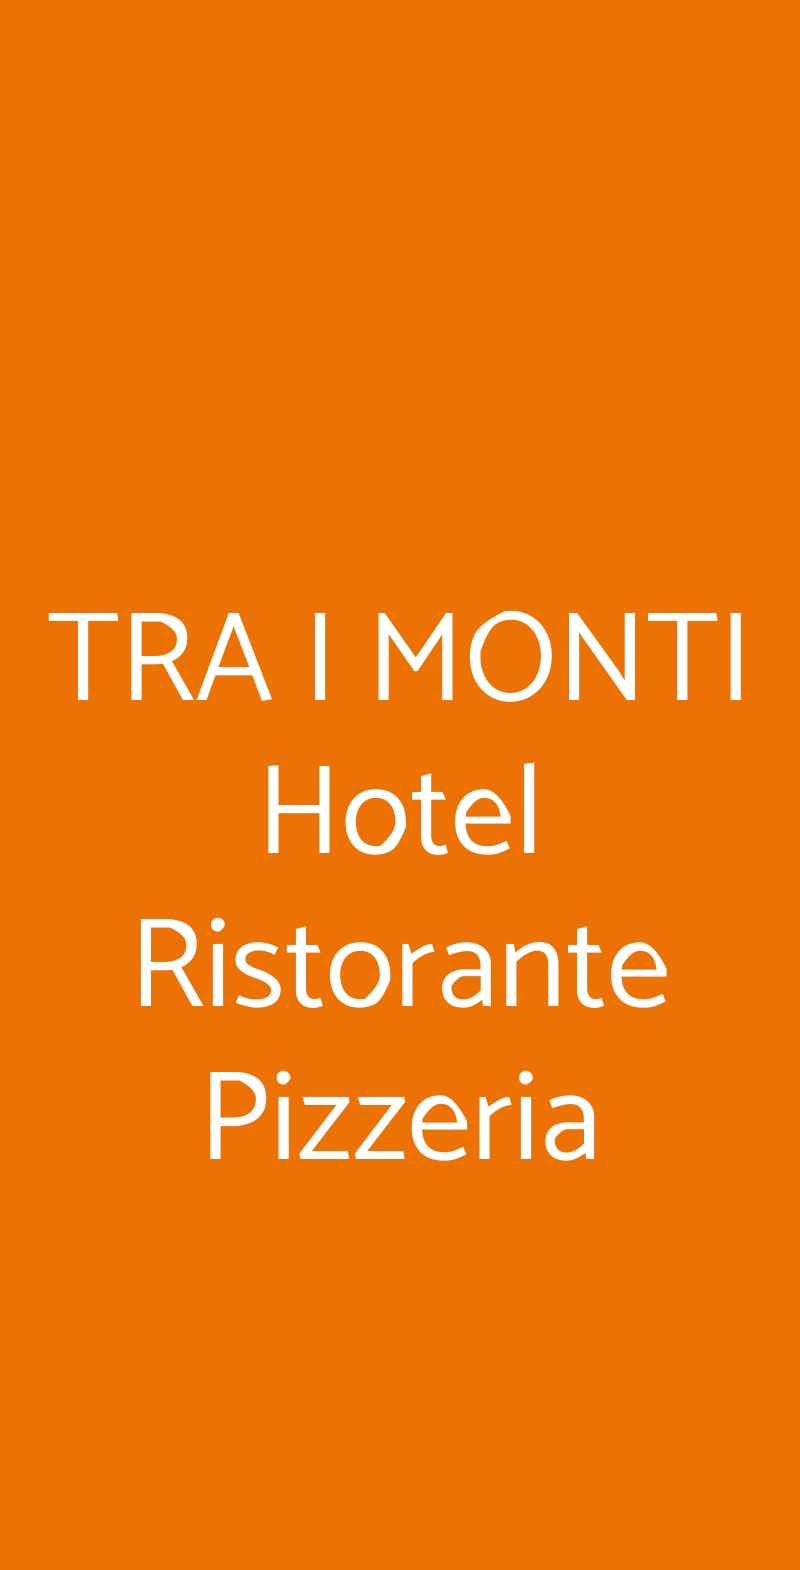 TRA I MONTI Hotel Ristorante Pizzeria Tramonti menù 1 pagina